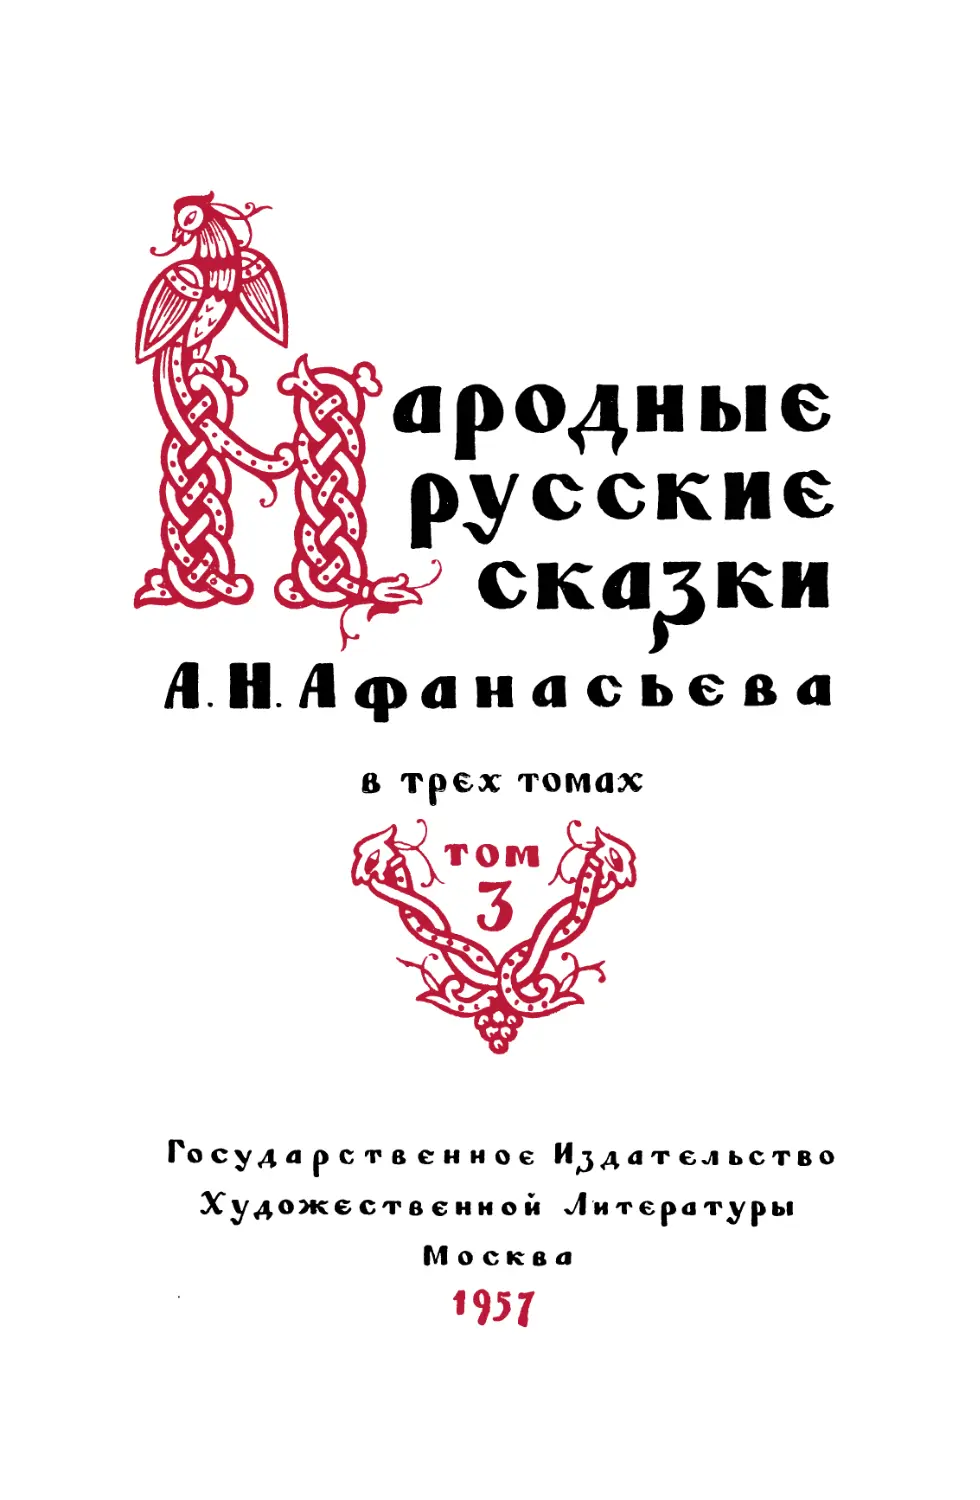 Народные русские сказки А.Н. Афанасьева. Т.3 - 1957